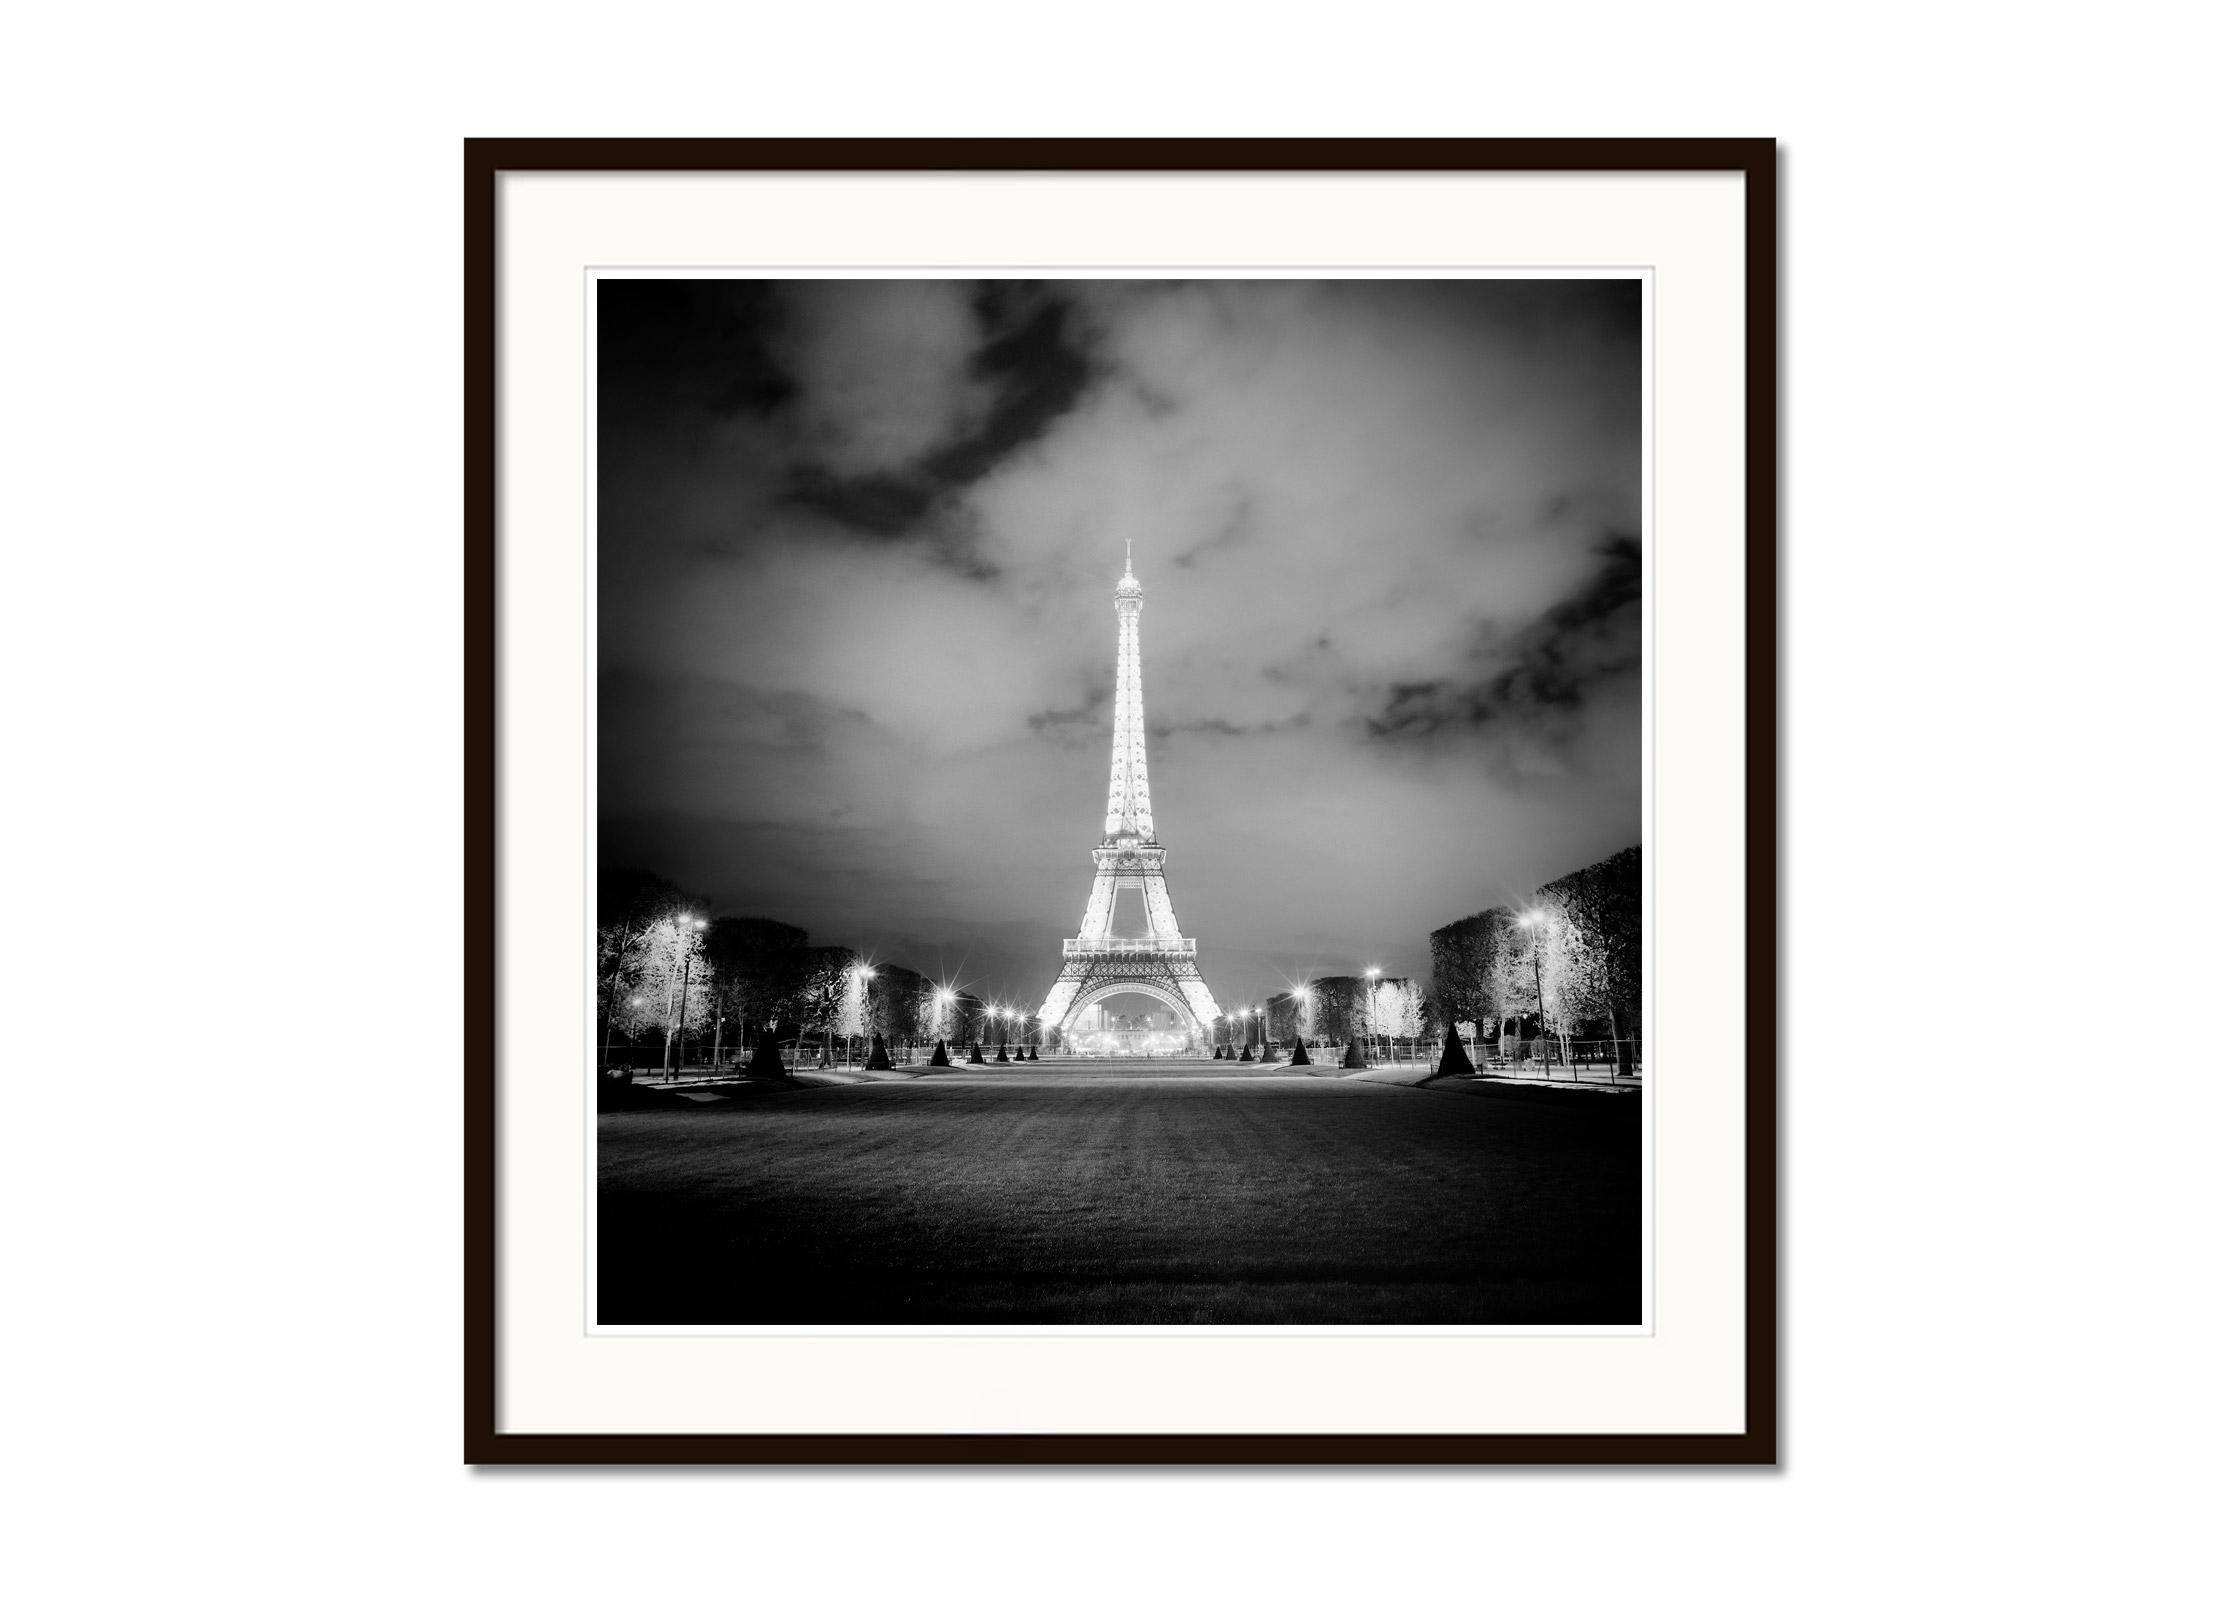 Tour Eiffel, Lights, Paris, spectacle de lumières, photographie en noir et blanc, paysage urbain - Noir Landscape Photograph par Gerald Berghammer